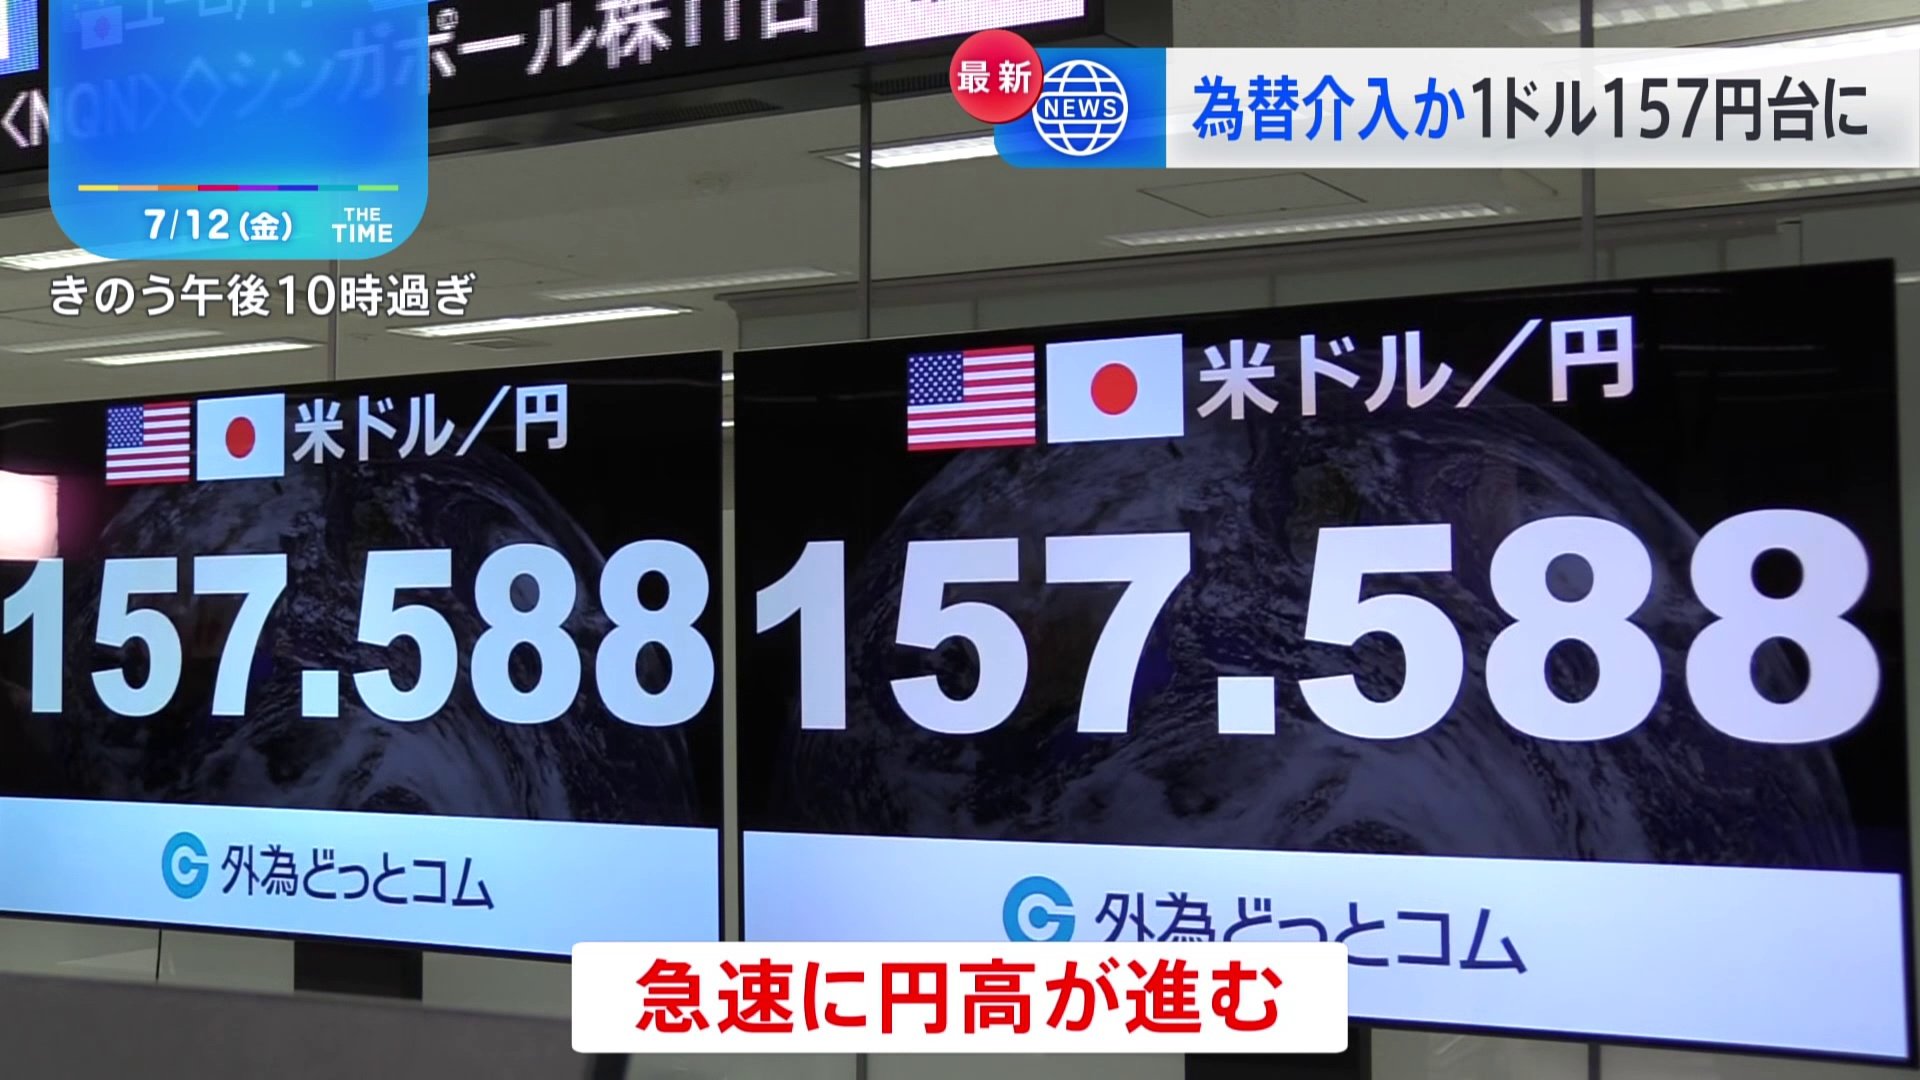 円相場、一時157円台に  神田財務官「為替介入の有無については申し上げない」